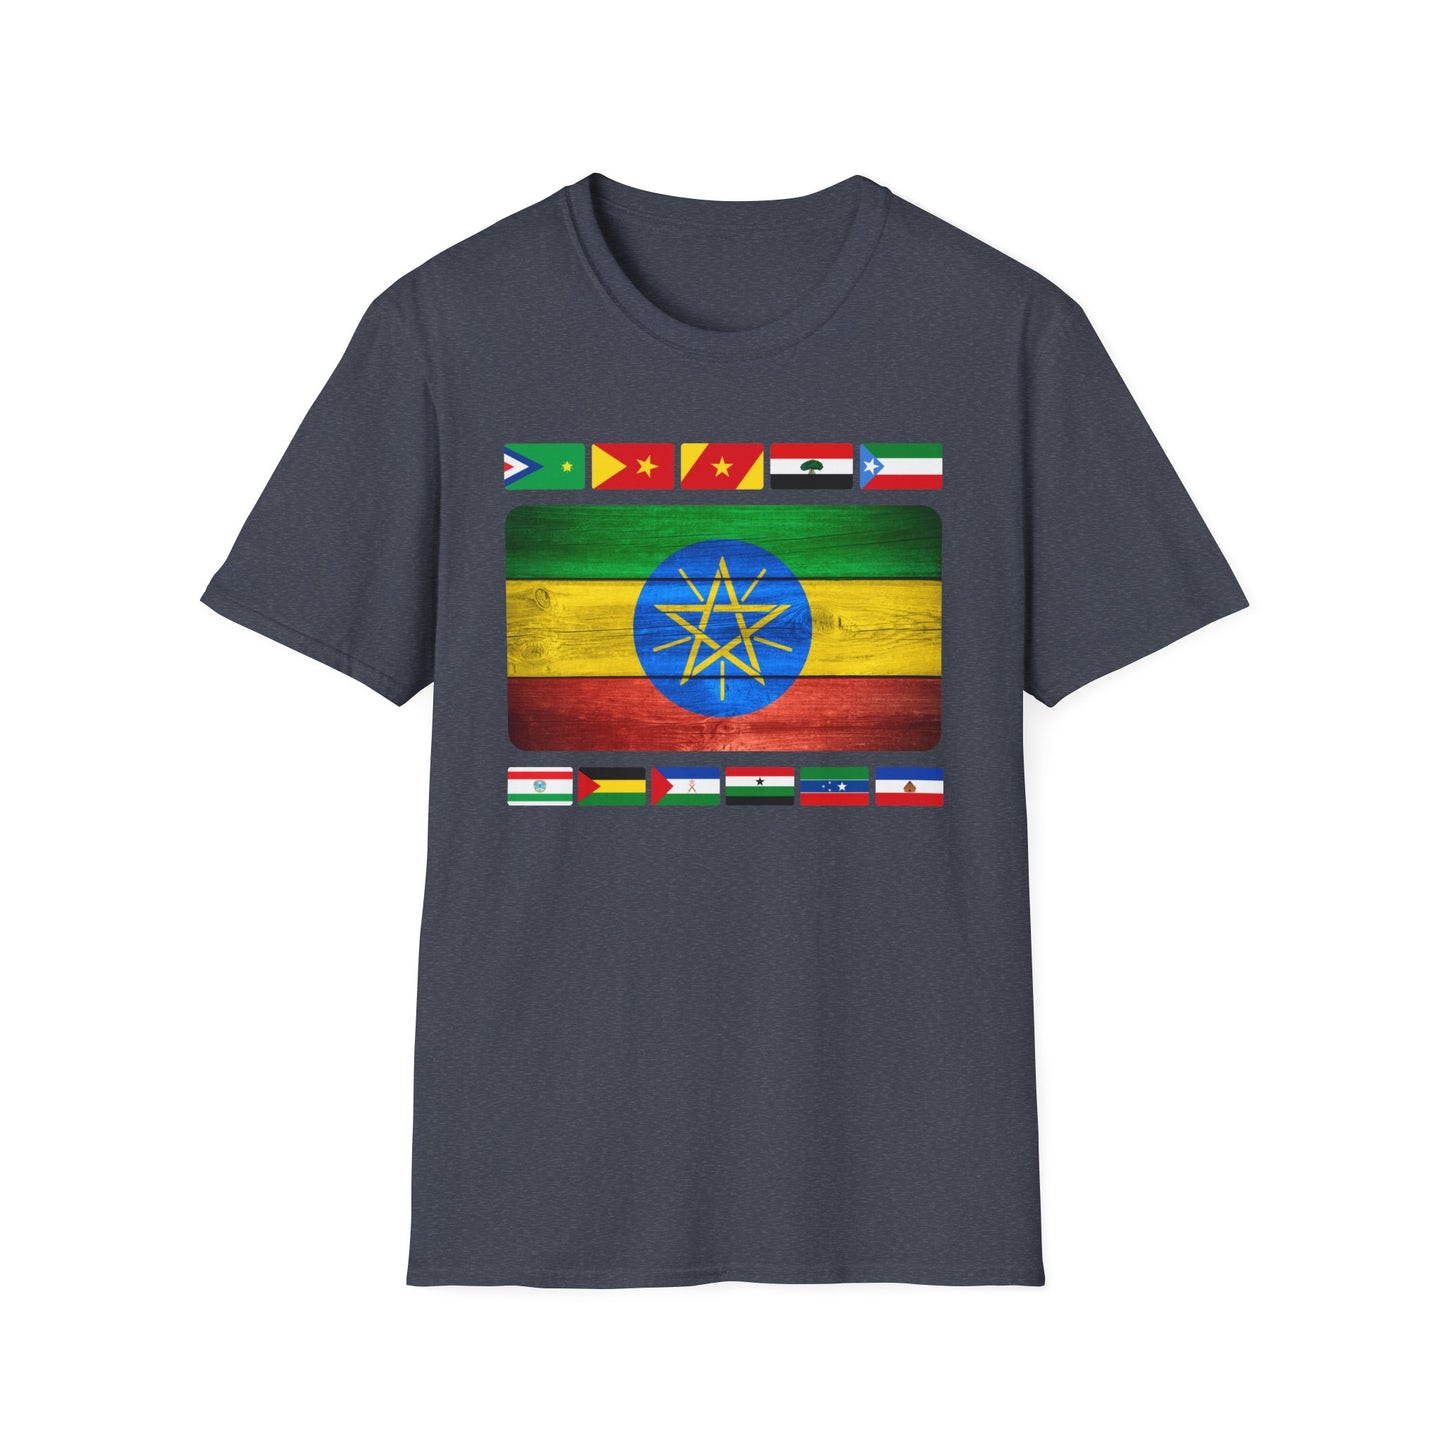 Harmonious Unity Ethiopian & Regional Flags T-Shirt